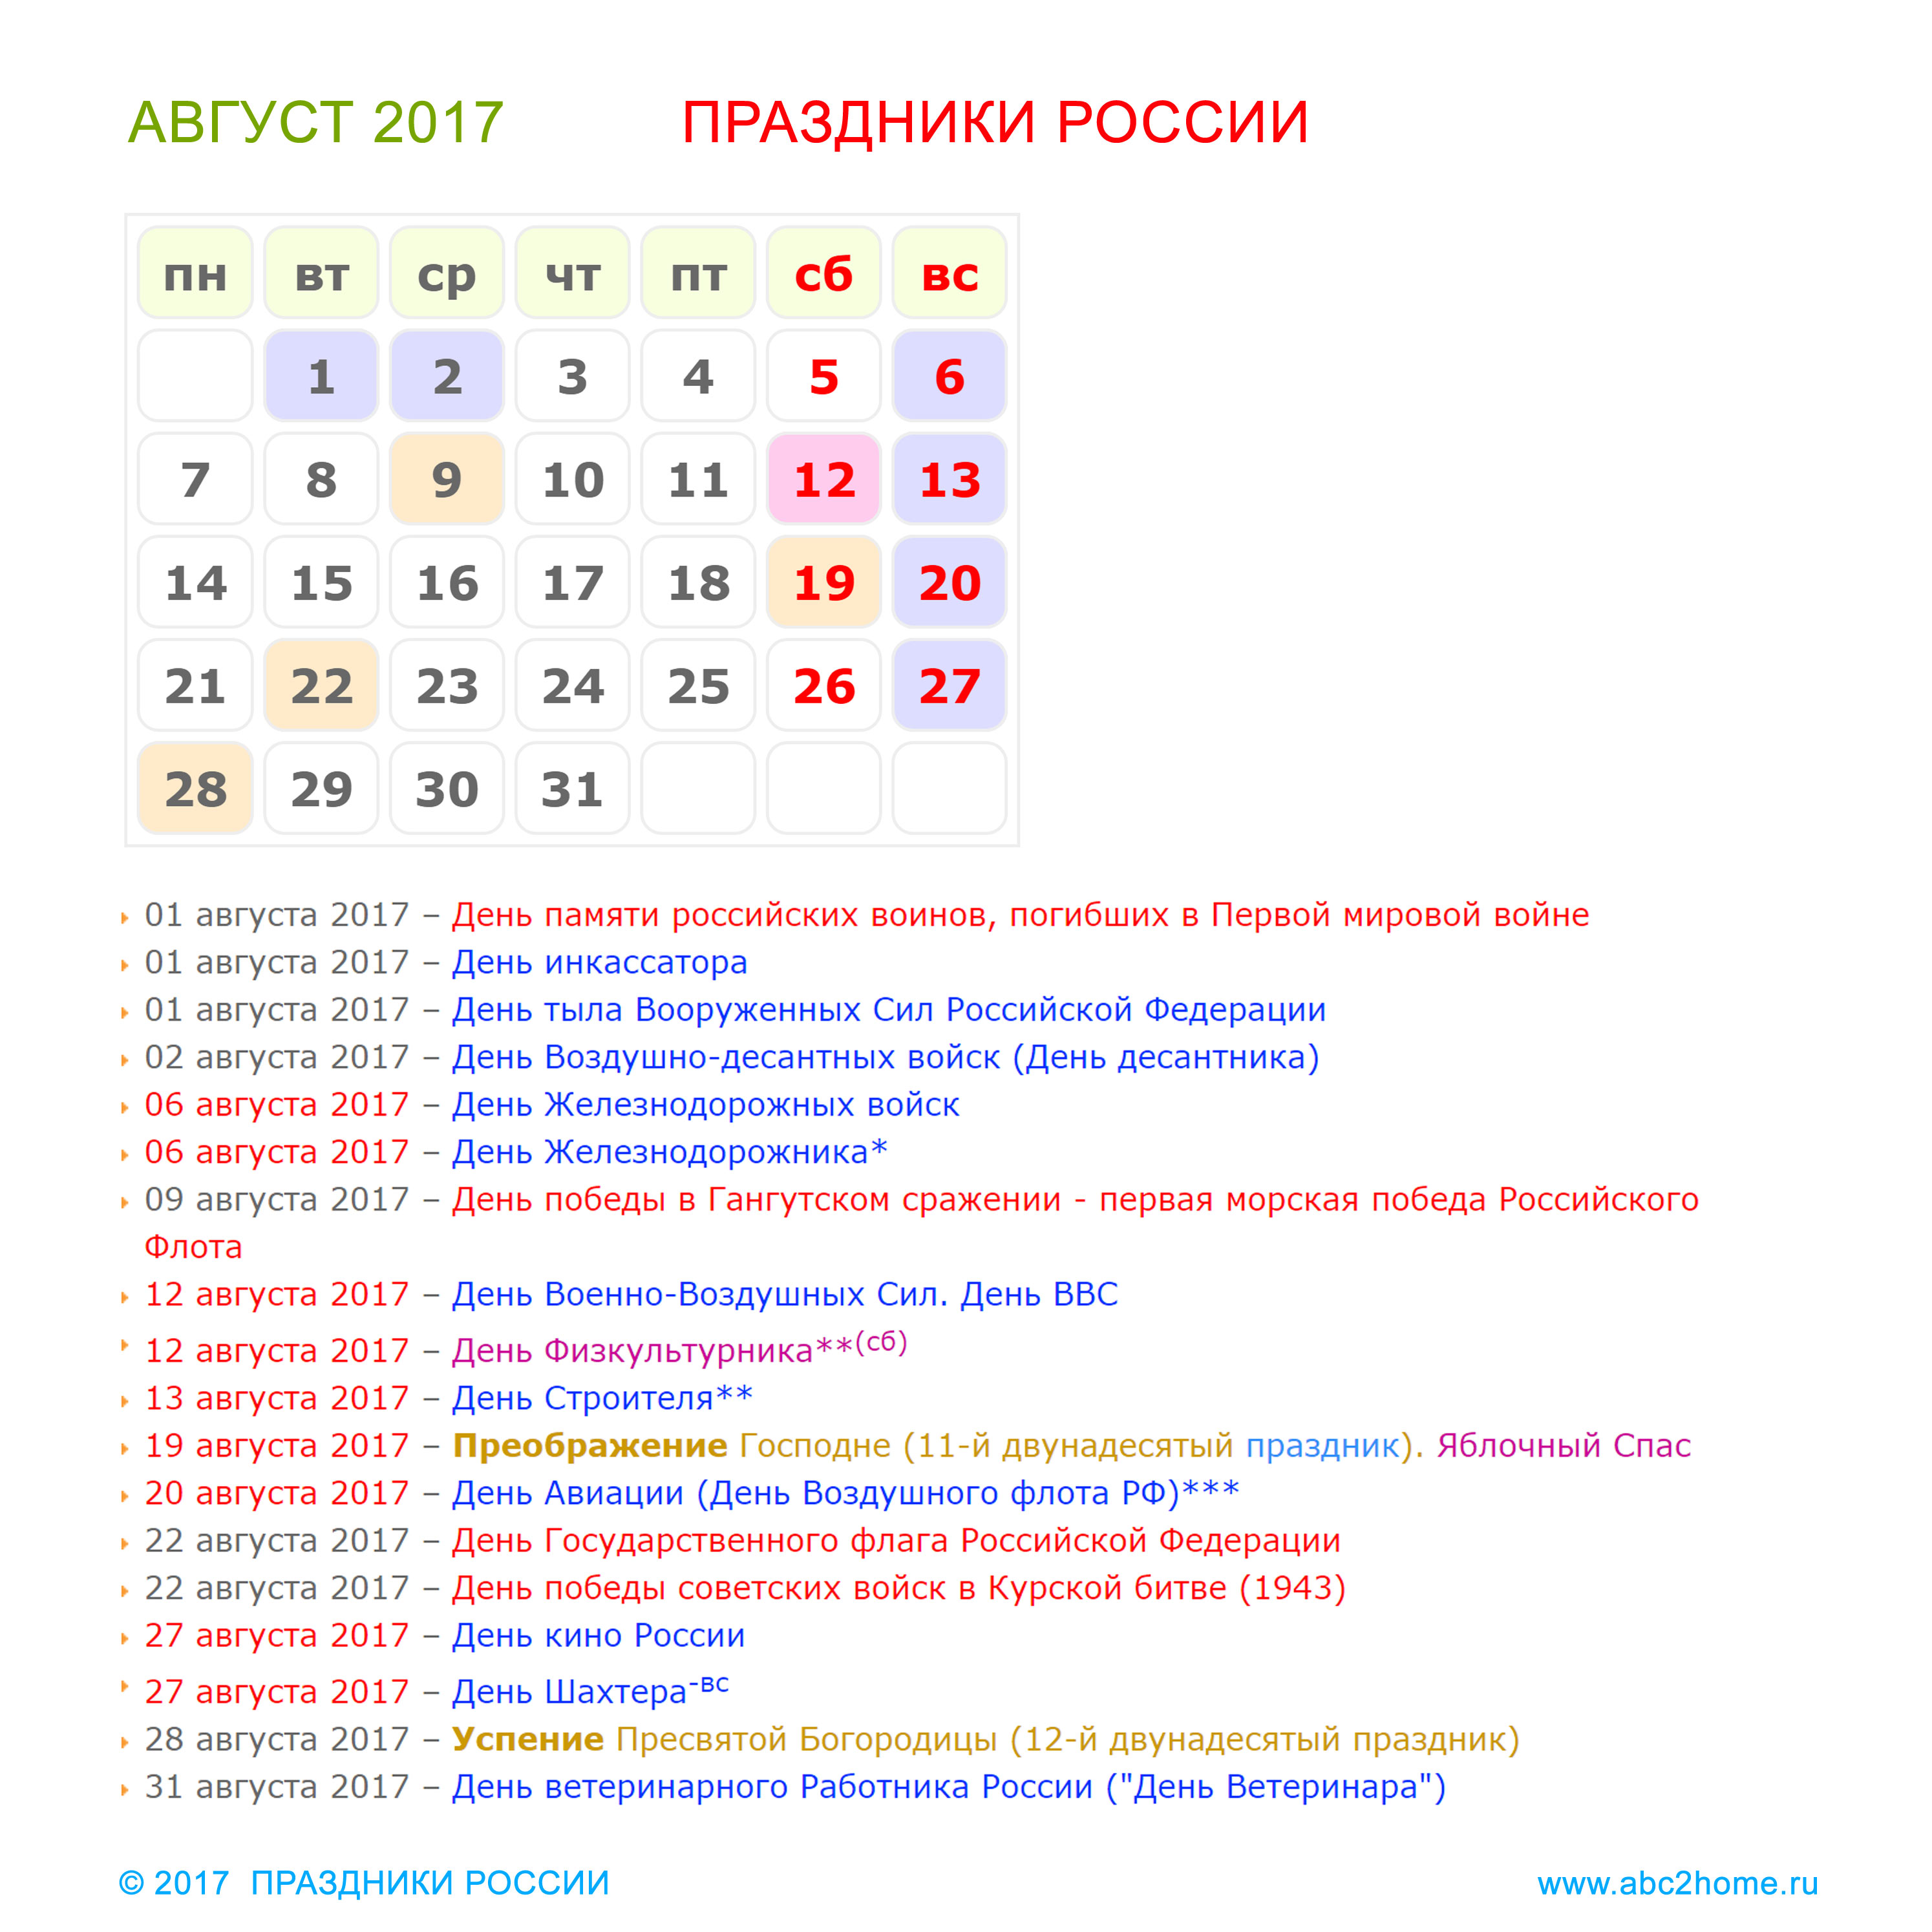 prazdniki_rossii_avgust_2017.jpg